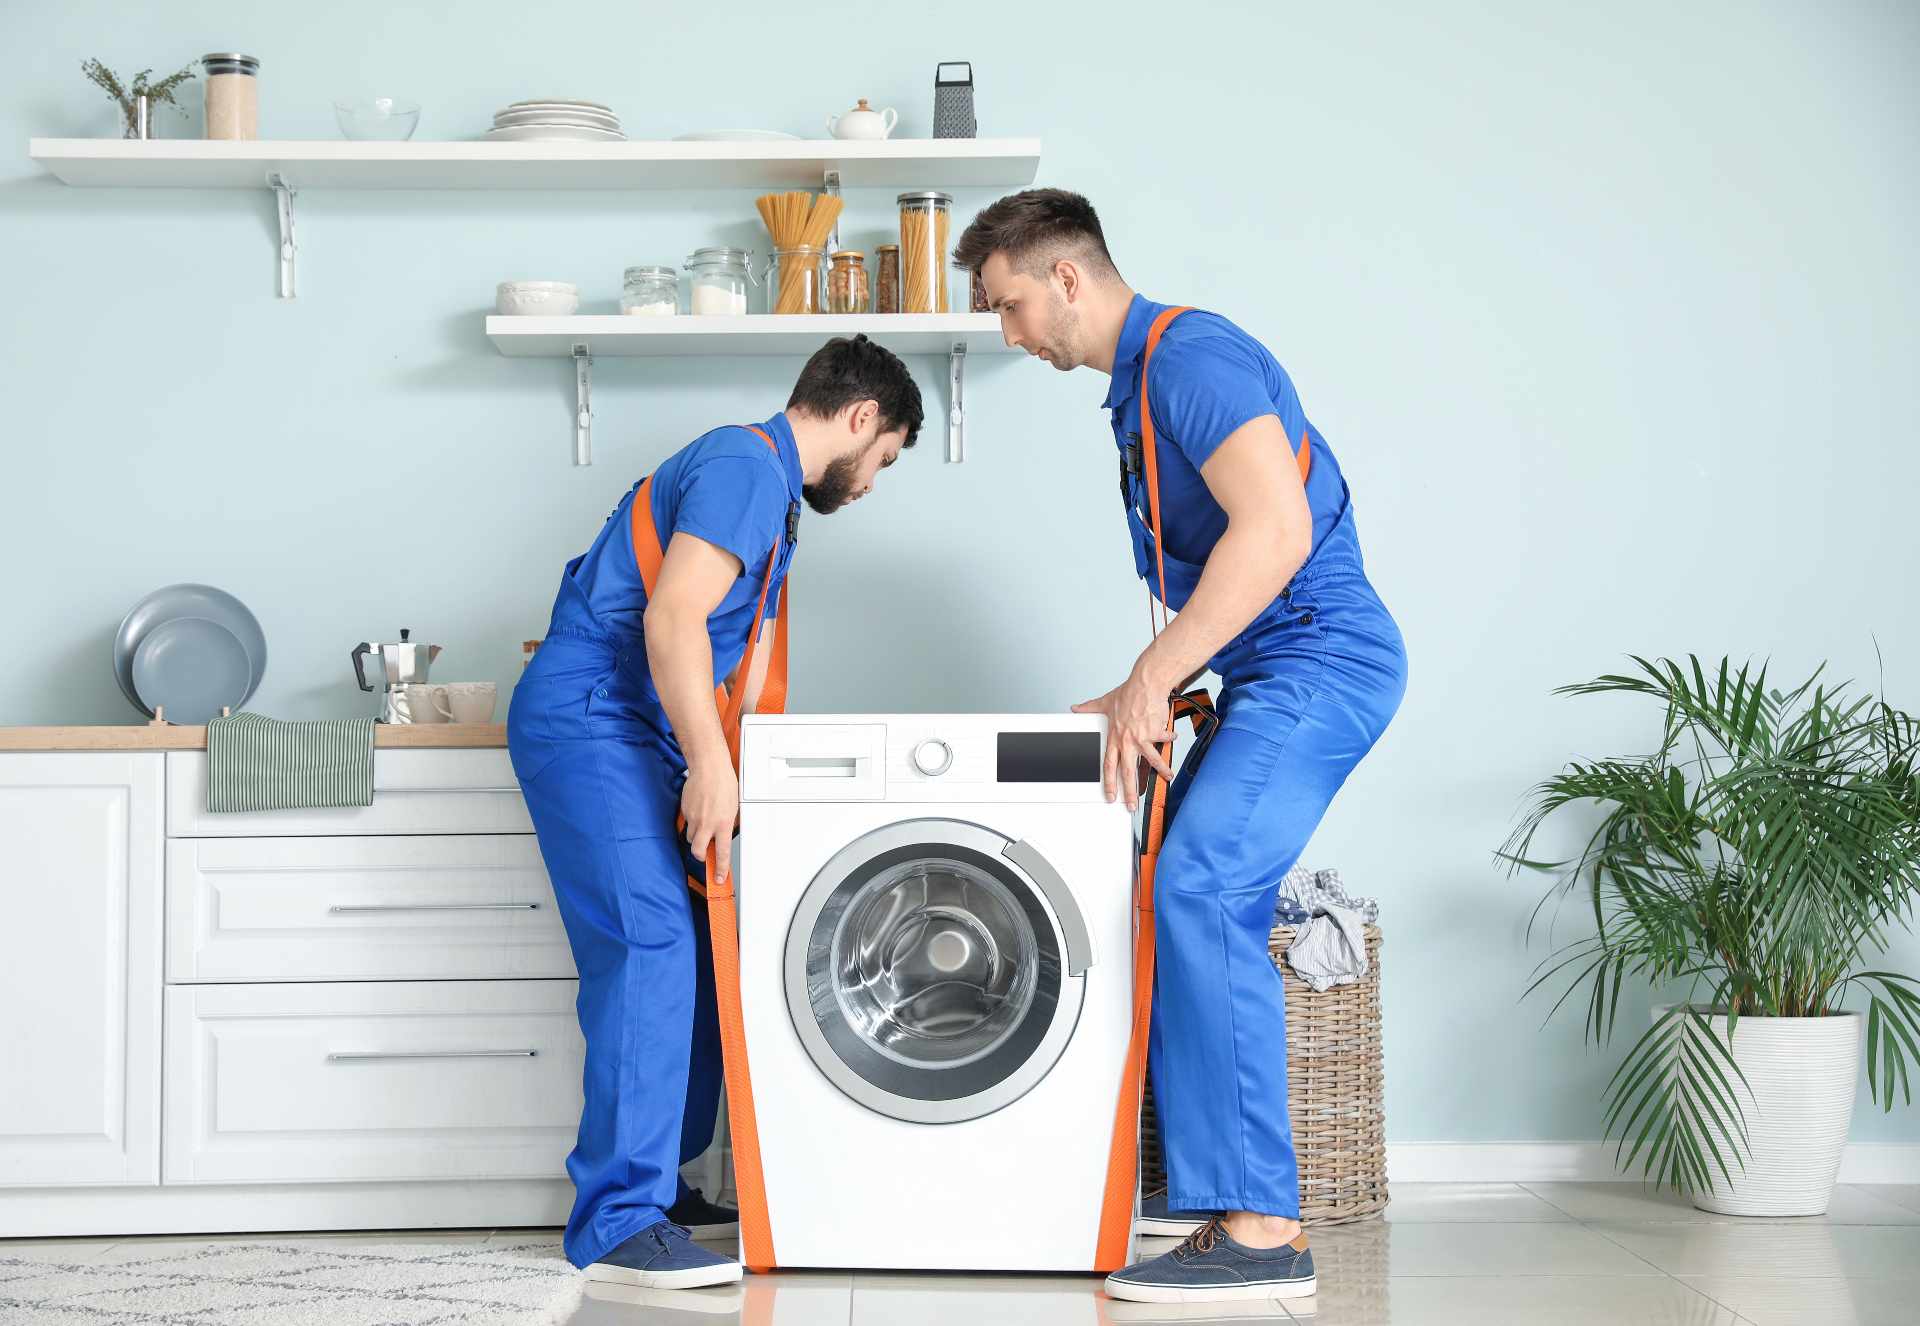 Comment stabiliser une machine à laver qui bouge de trop ?